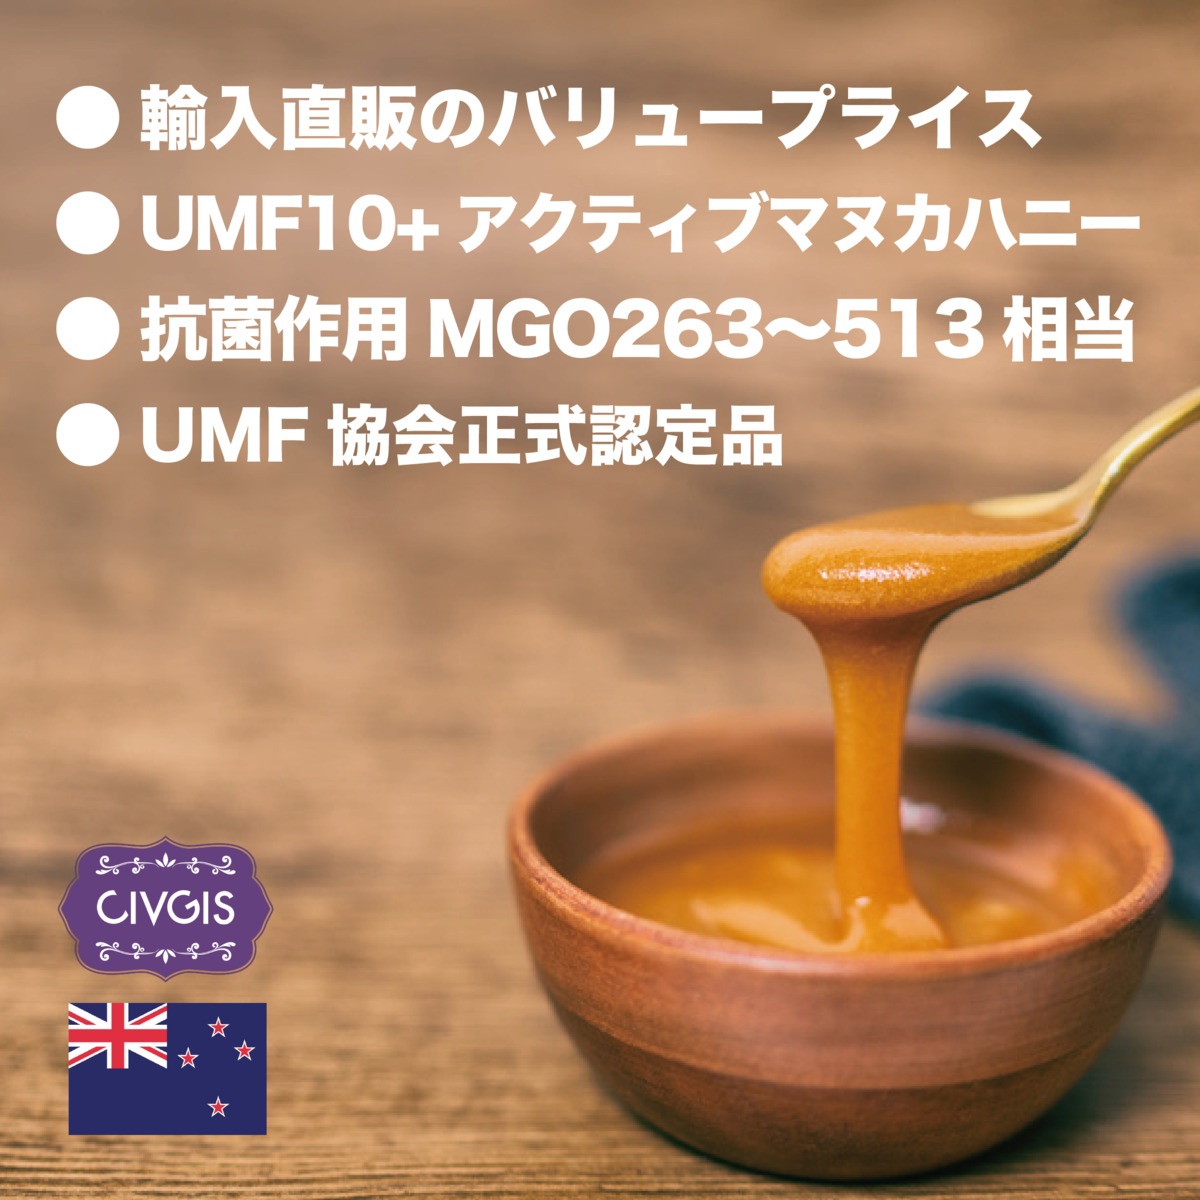 マヌカハニー250g X 3本セット『UMF協会認定UMF10 』Manuka Honey UMF10  250g X 3PCS『MELITA   CIVGIS メリタ・チブギス』